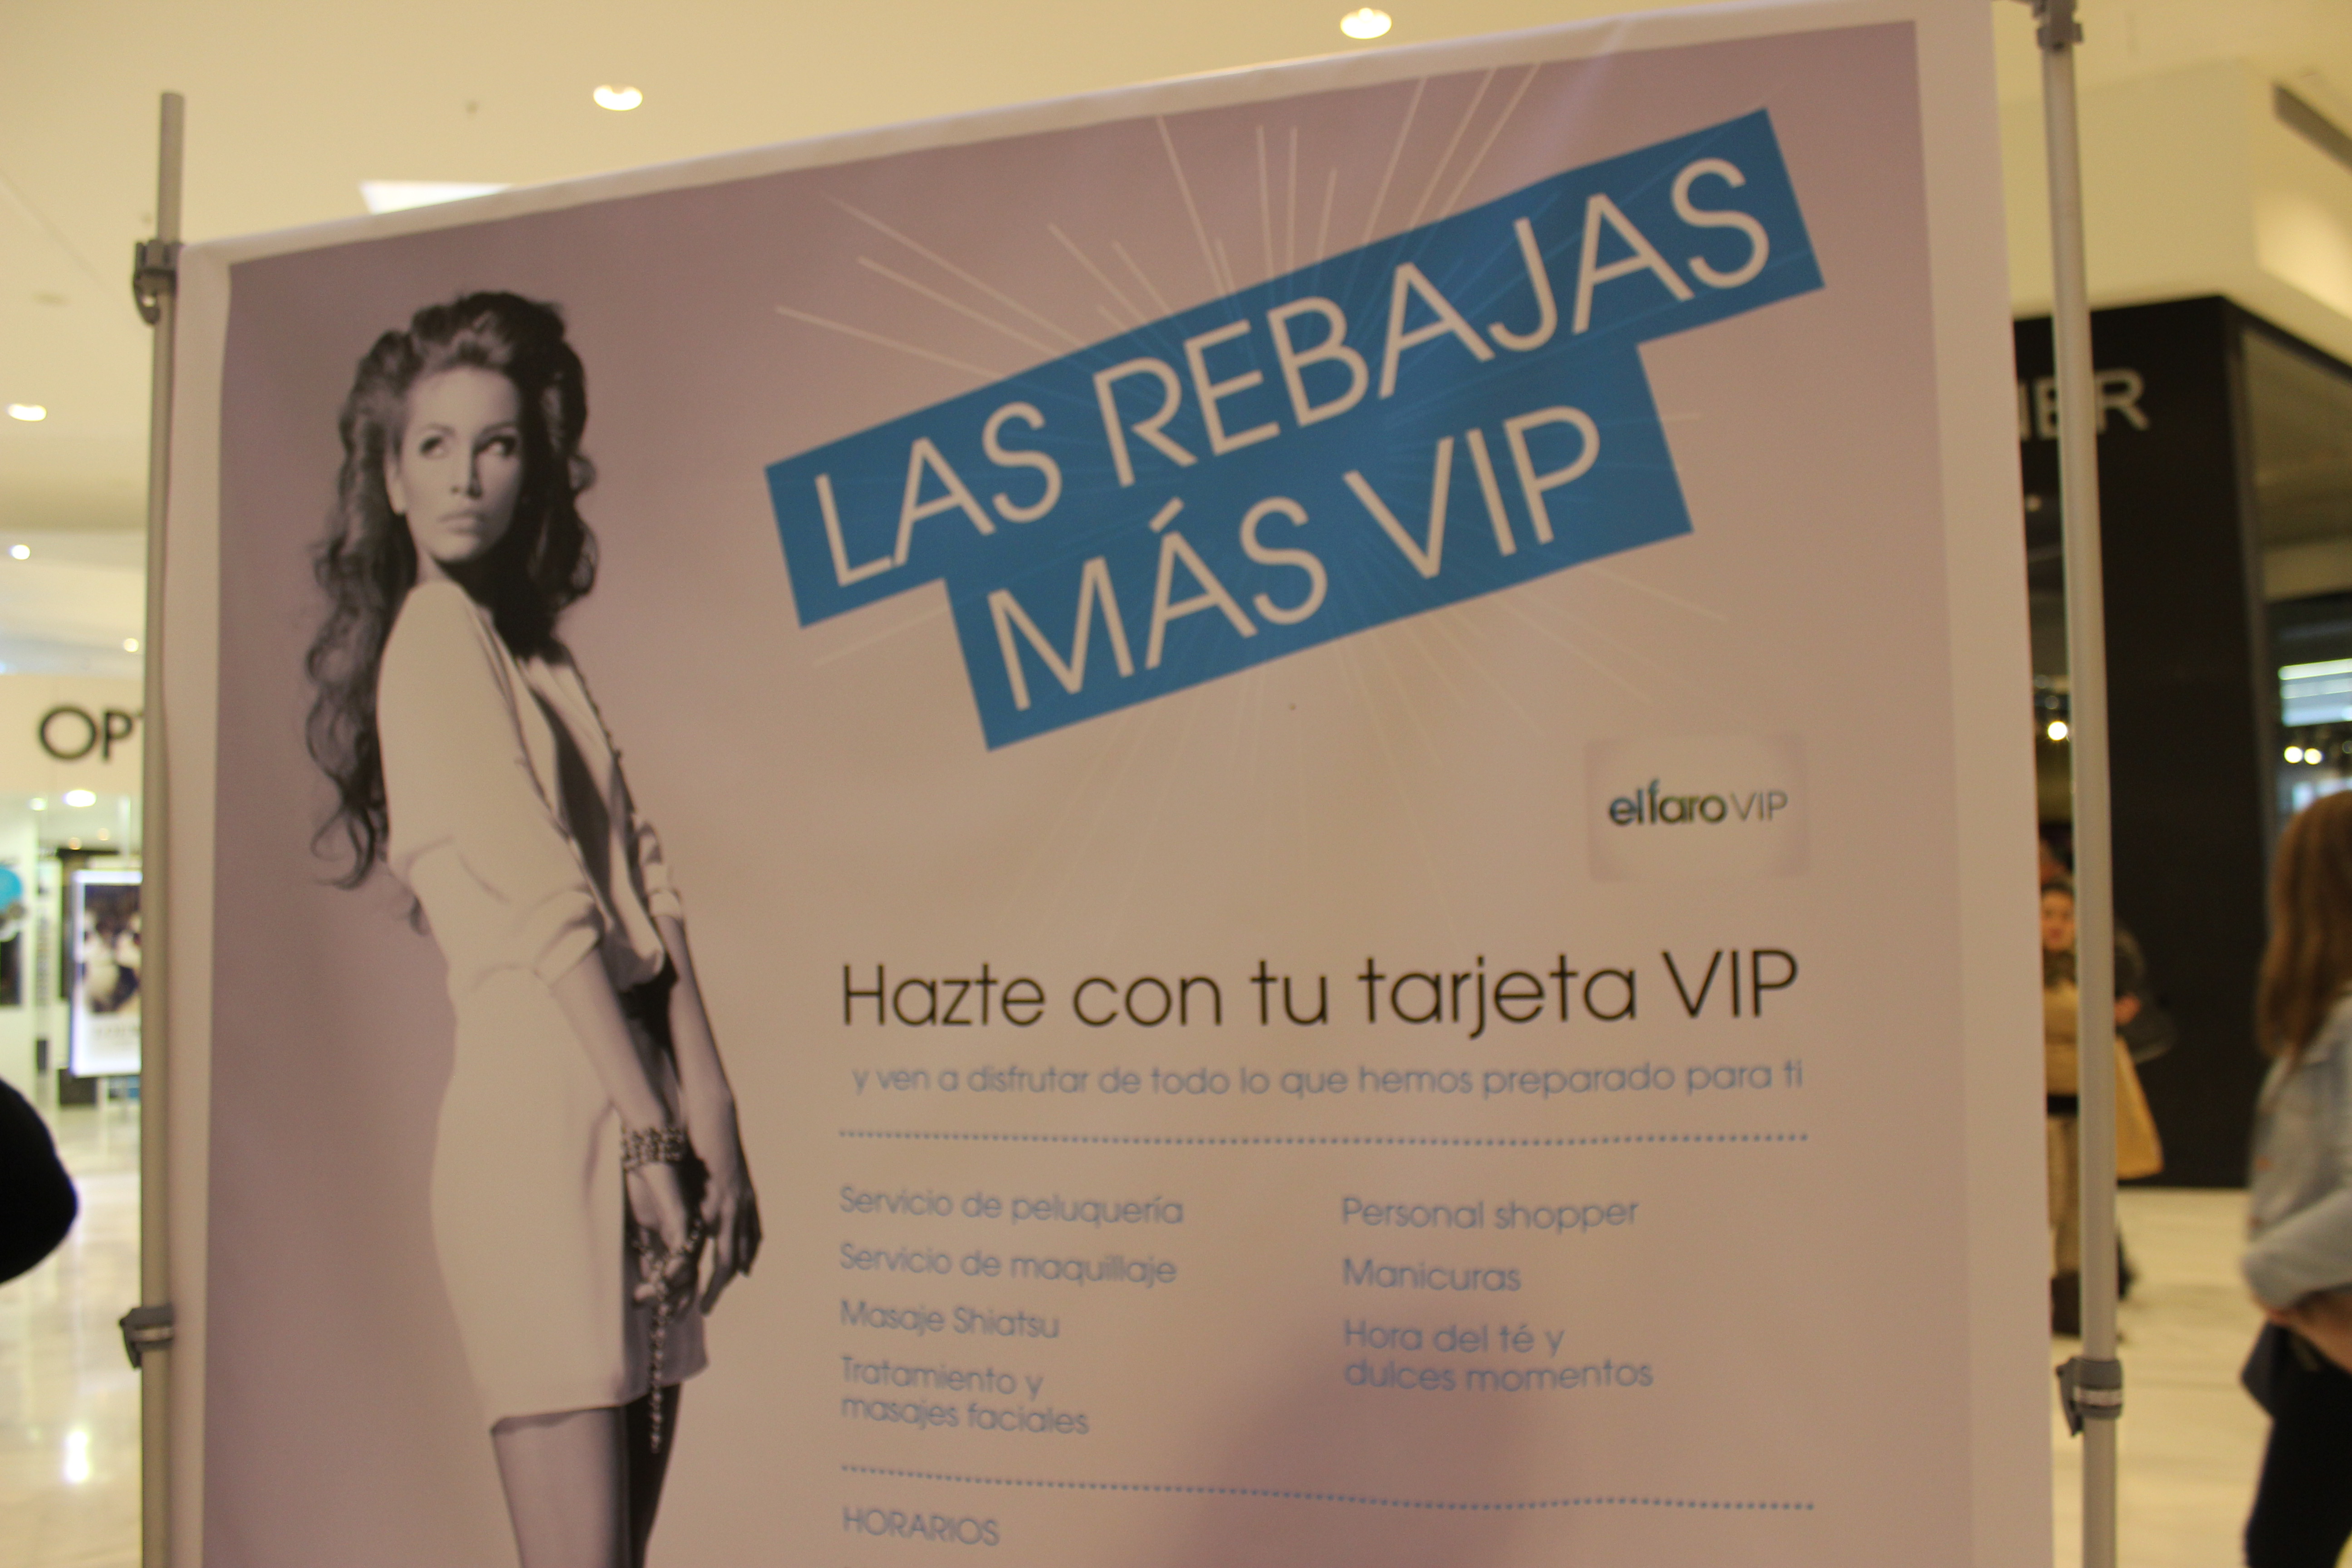 El Faro presenta sus Rebajas VIP hasta el 11 de enero